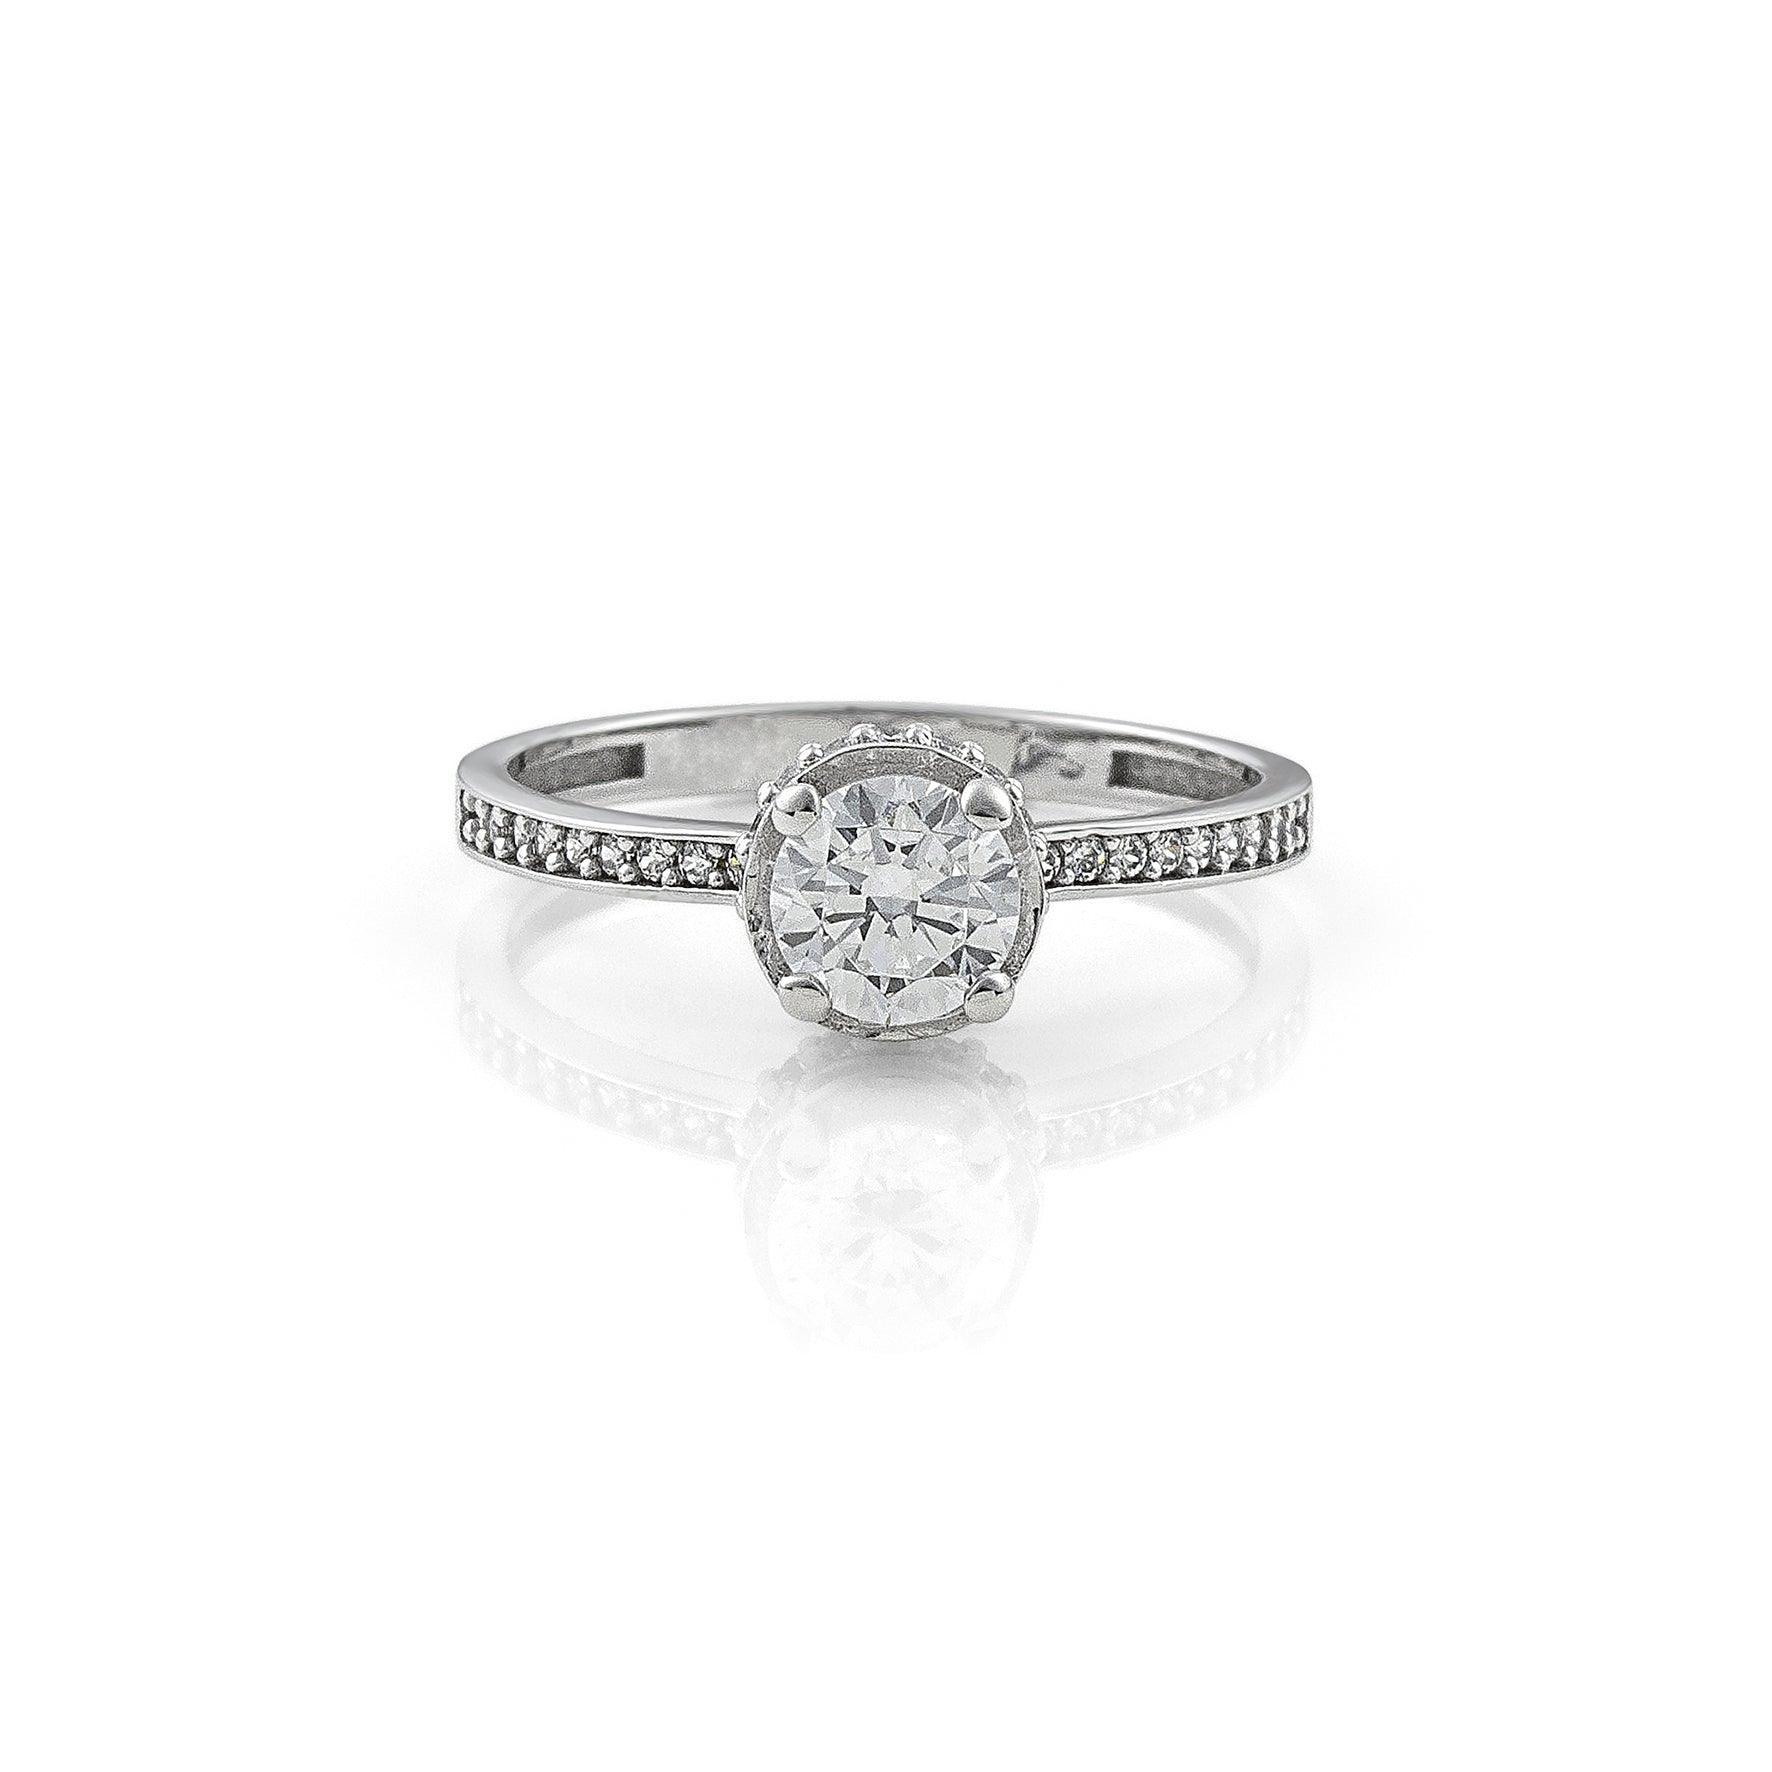 Μονόπετρο δαχτυλίδι με κεντρικό διαμάντι round cut, πλαίνές πέτρες από μικρότερα διαμάντια και στρογγυλό καστόνι σε σχήμα κορώνας κατασκευασμένο από λευκόχρυσο.